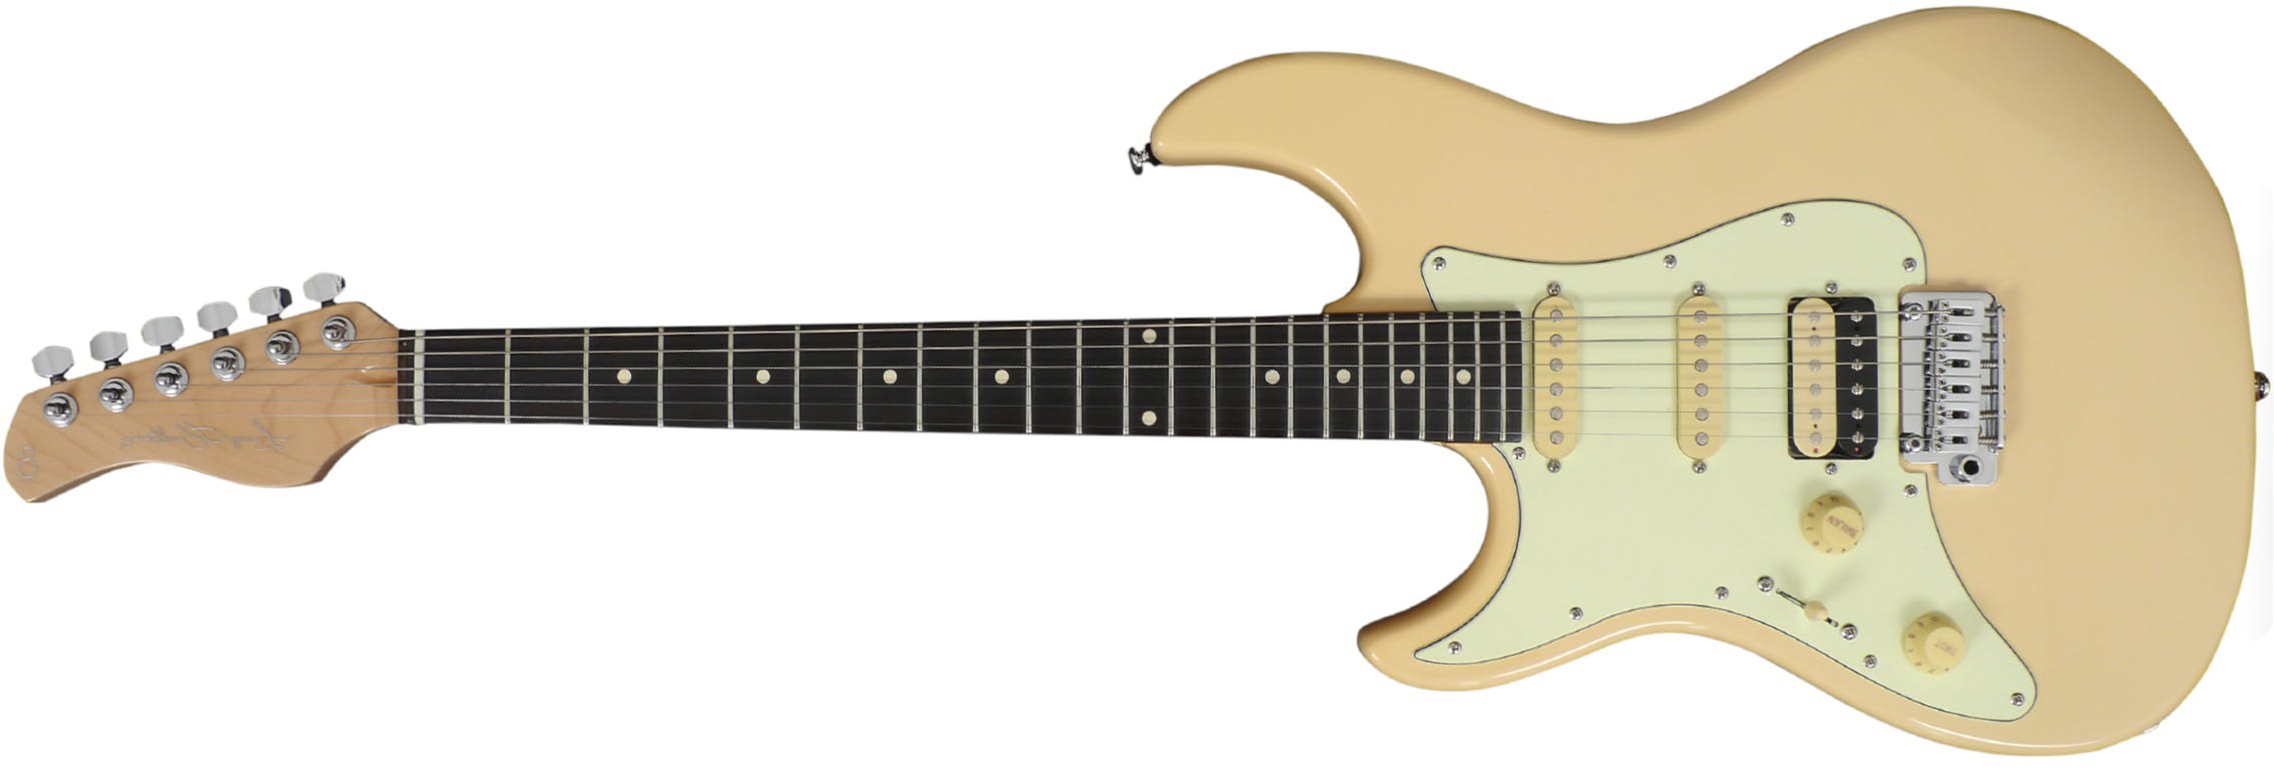 Sire Larry Carlton S3 Lh Signature Gaucher Hss Trem Rw - Vintage White - E-Gitarre für Linkshänder - Main picture